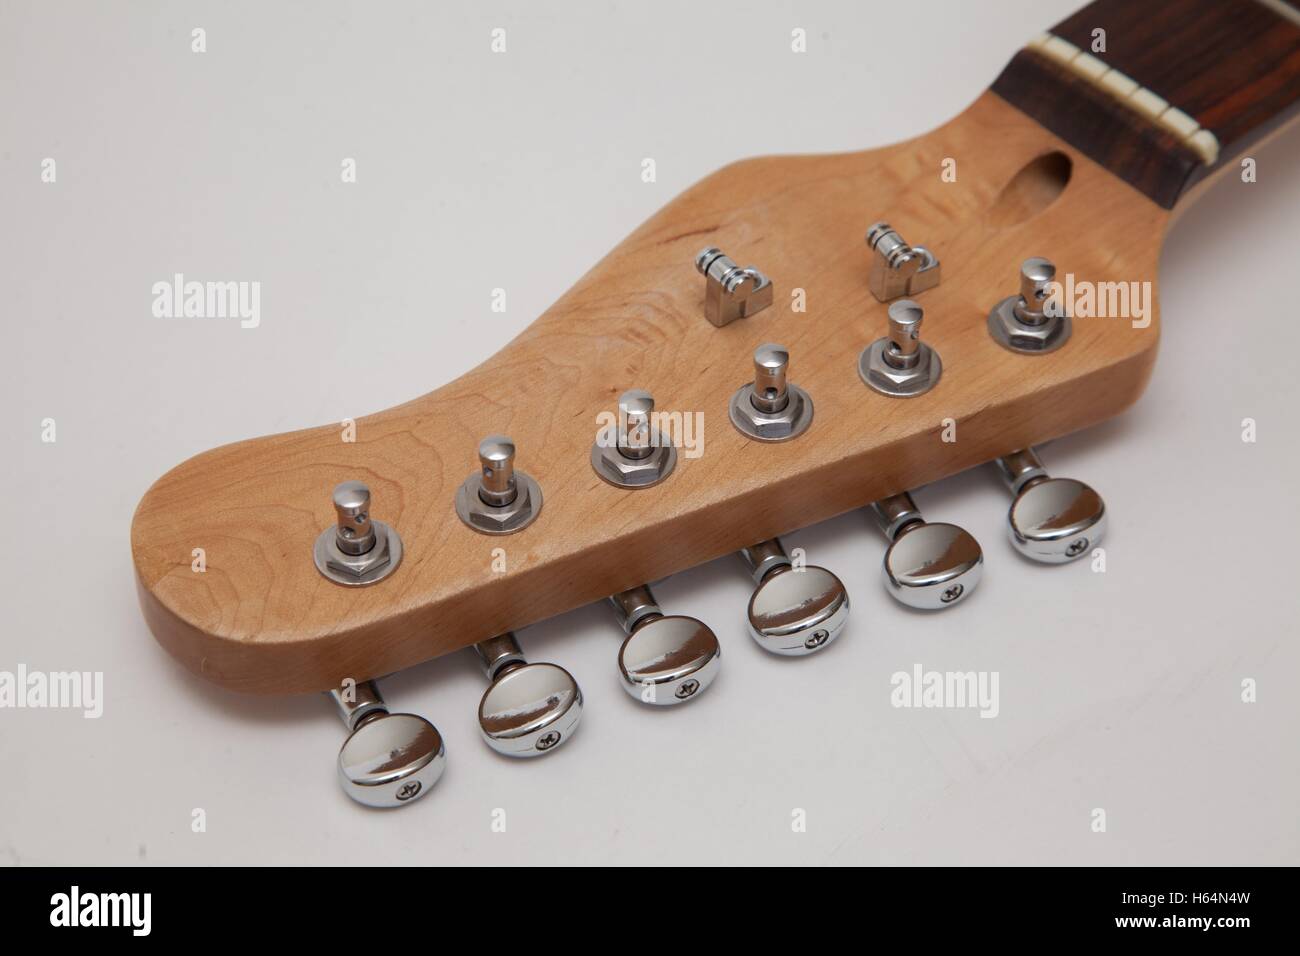 Tuner auf der Kopfplatte einer e-Gitarre Ahornhals mit einem Palisander-Griffbrett, Walze Zeichenfolge Bäumen befestigt Stockfoto